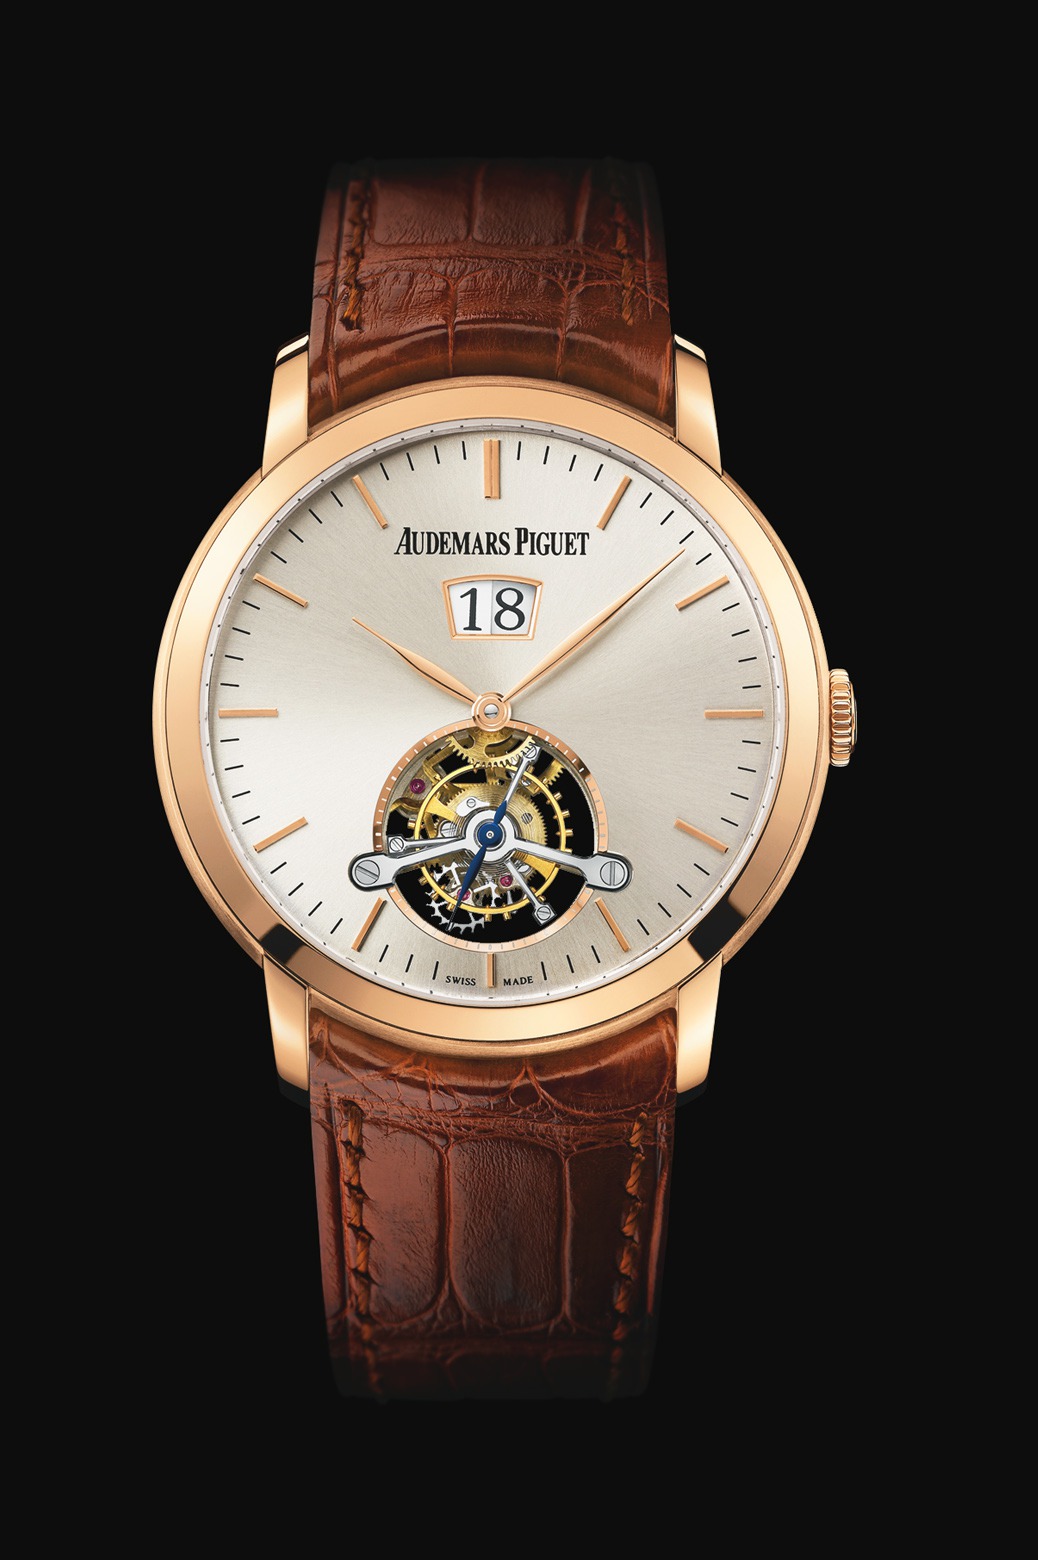 Audemars Piguet Jules Audemars Large Date Tourbillon Pink Gold watch REF: 26559OR.OO.D088CR.01